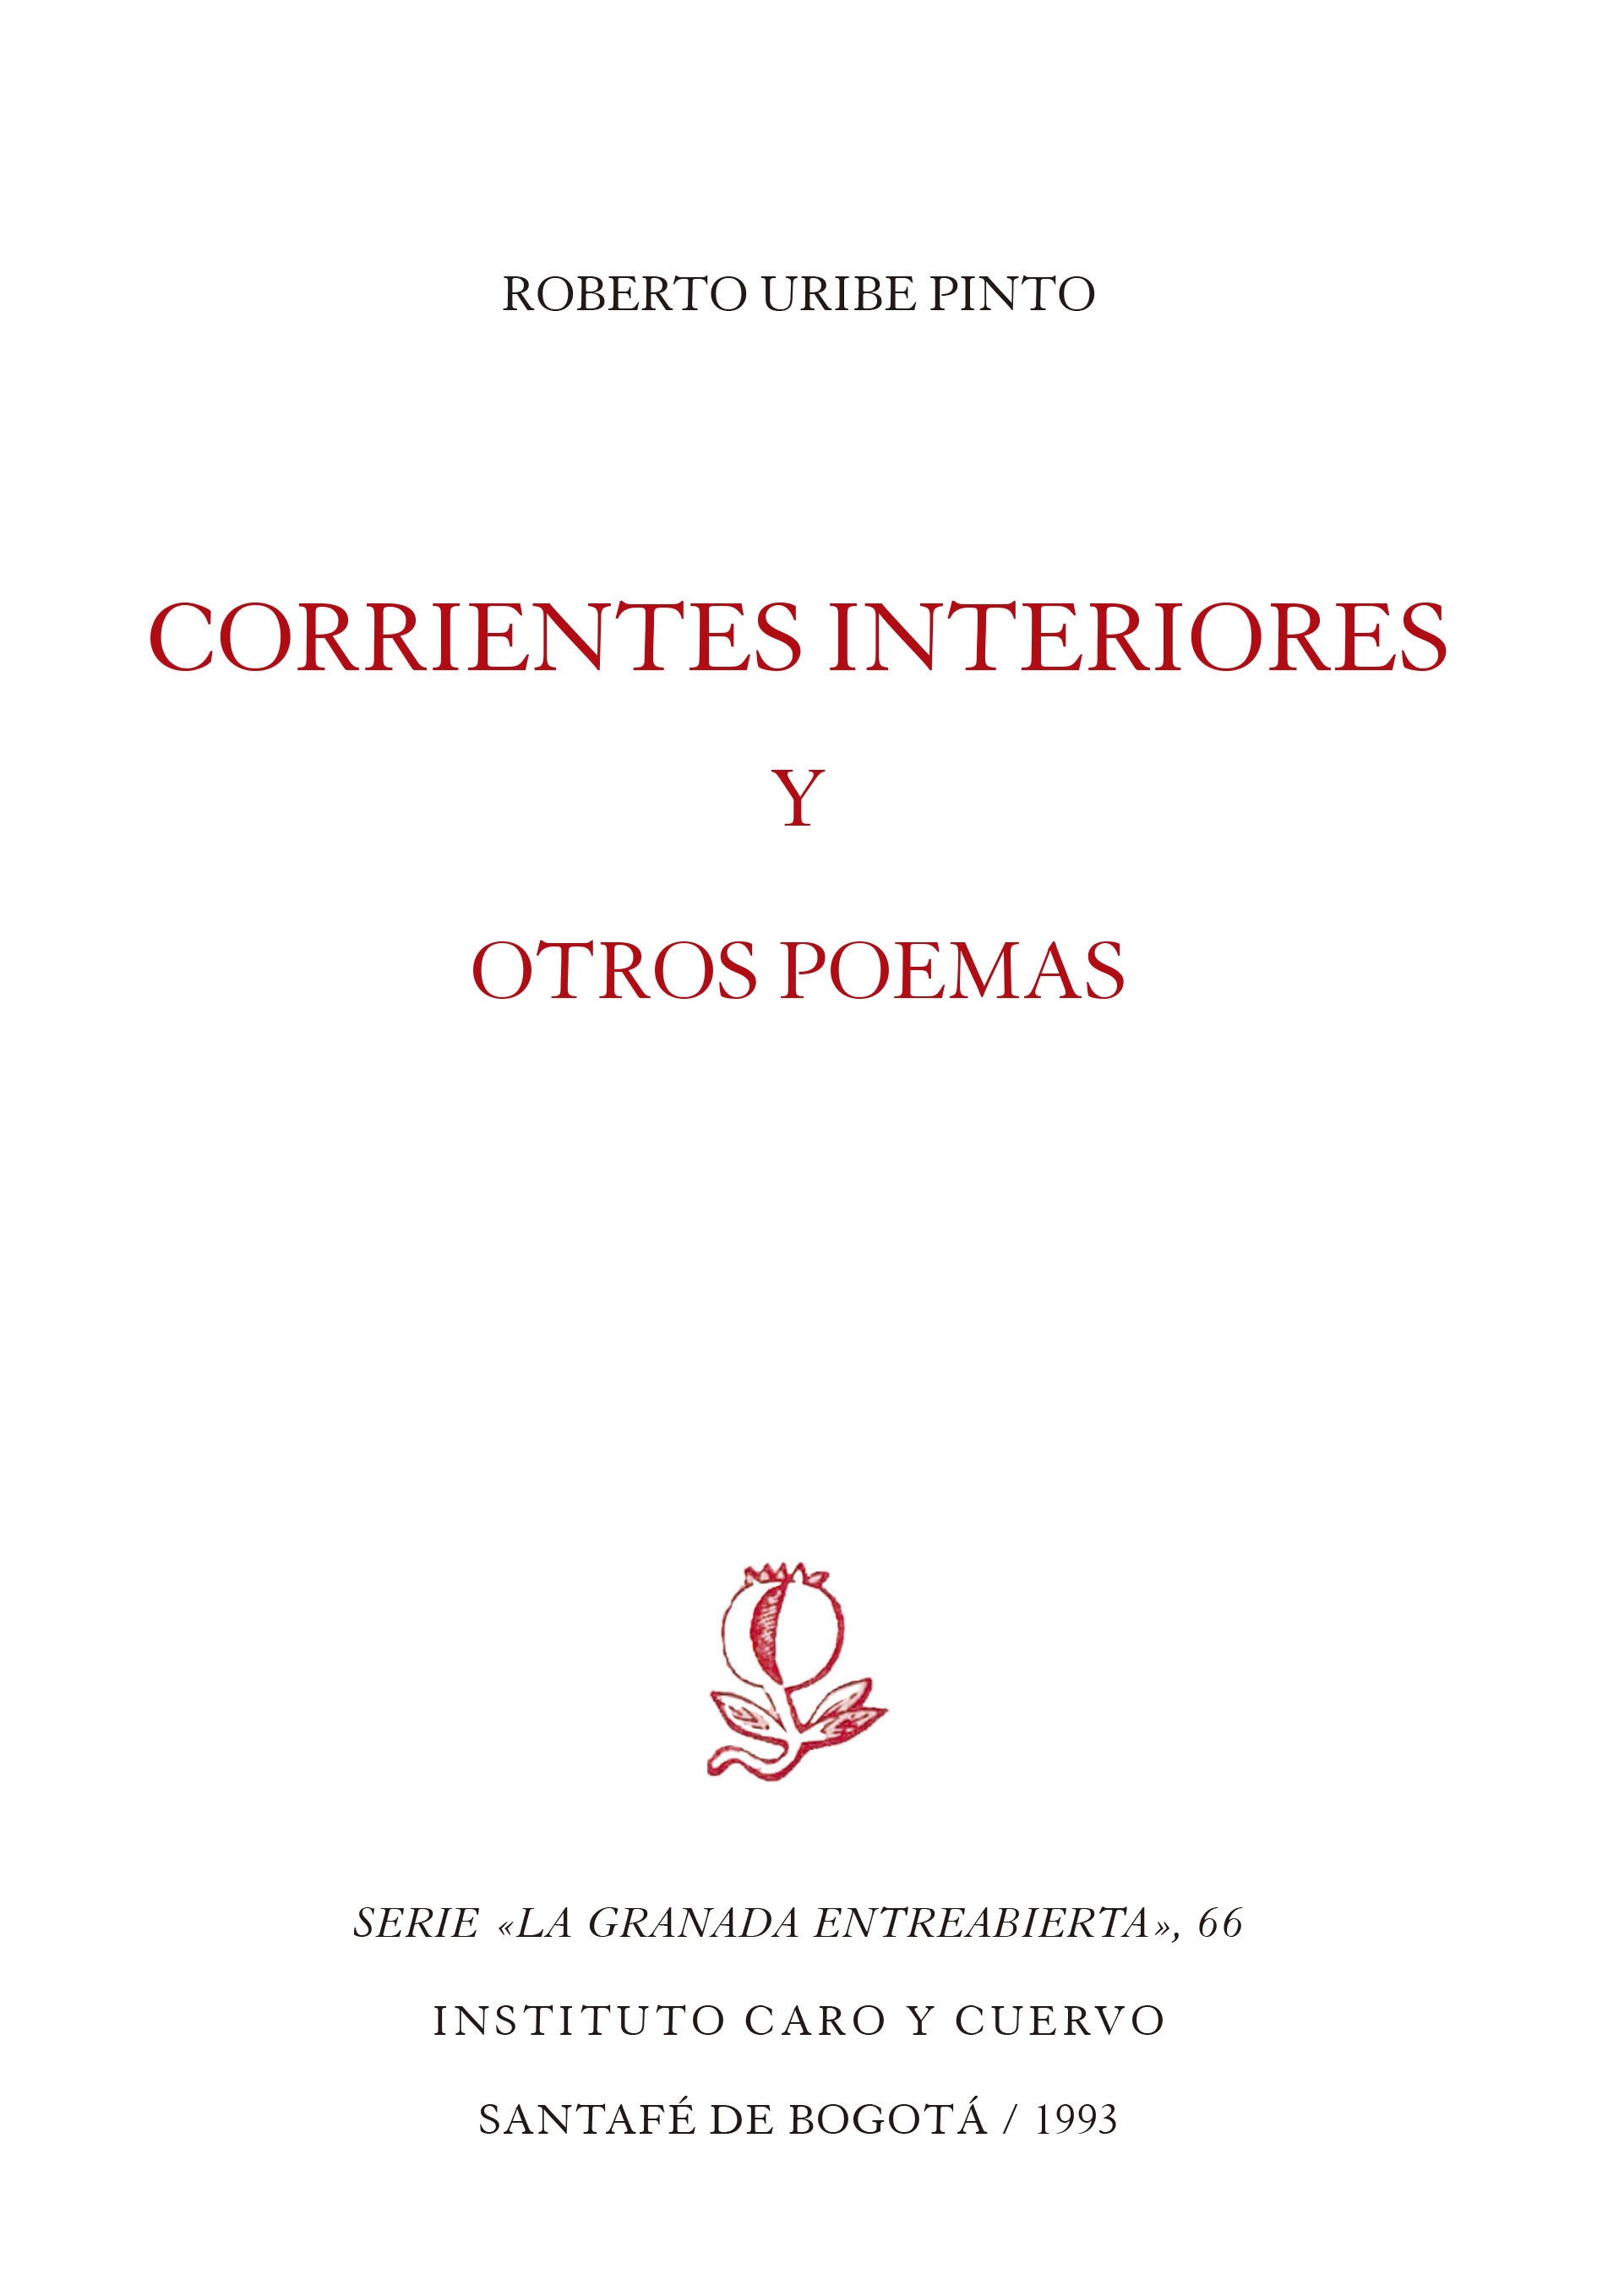 Corrientes interiores y otros poemas